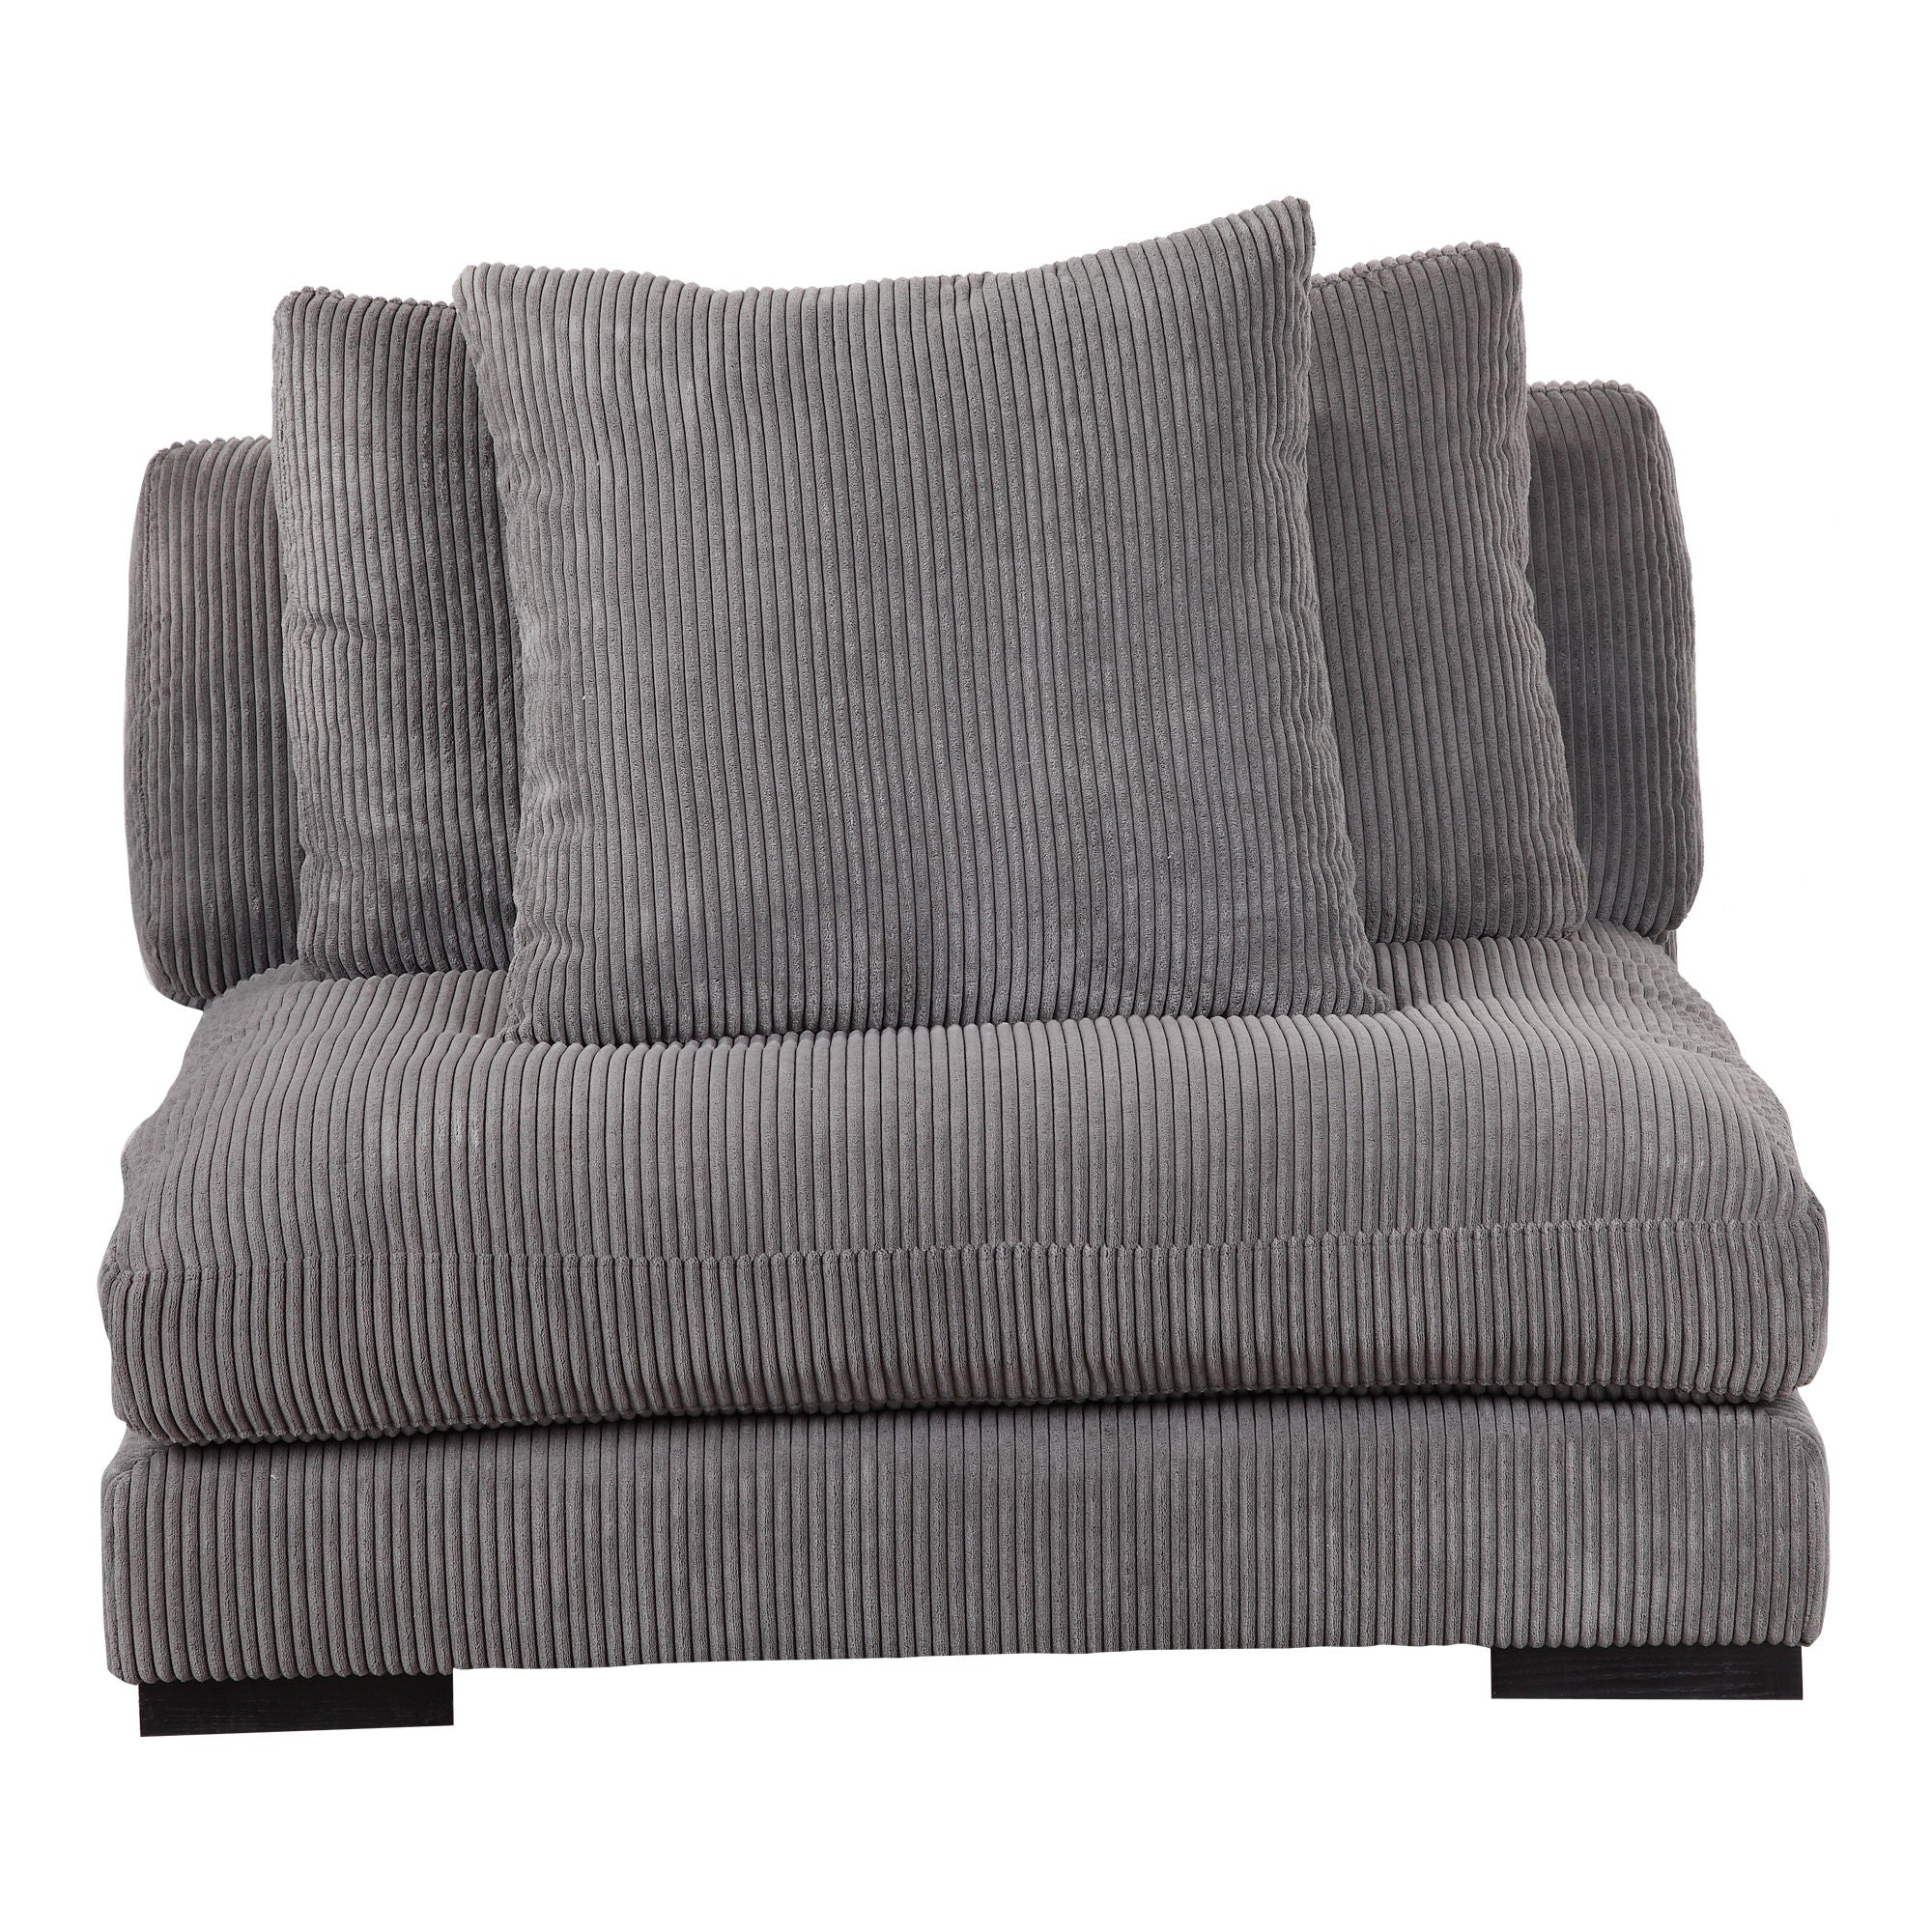 Tumble - Slipper Chair - Charcoal